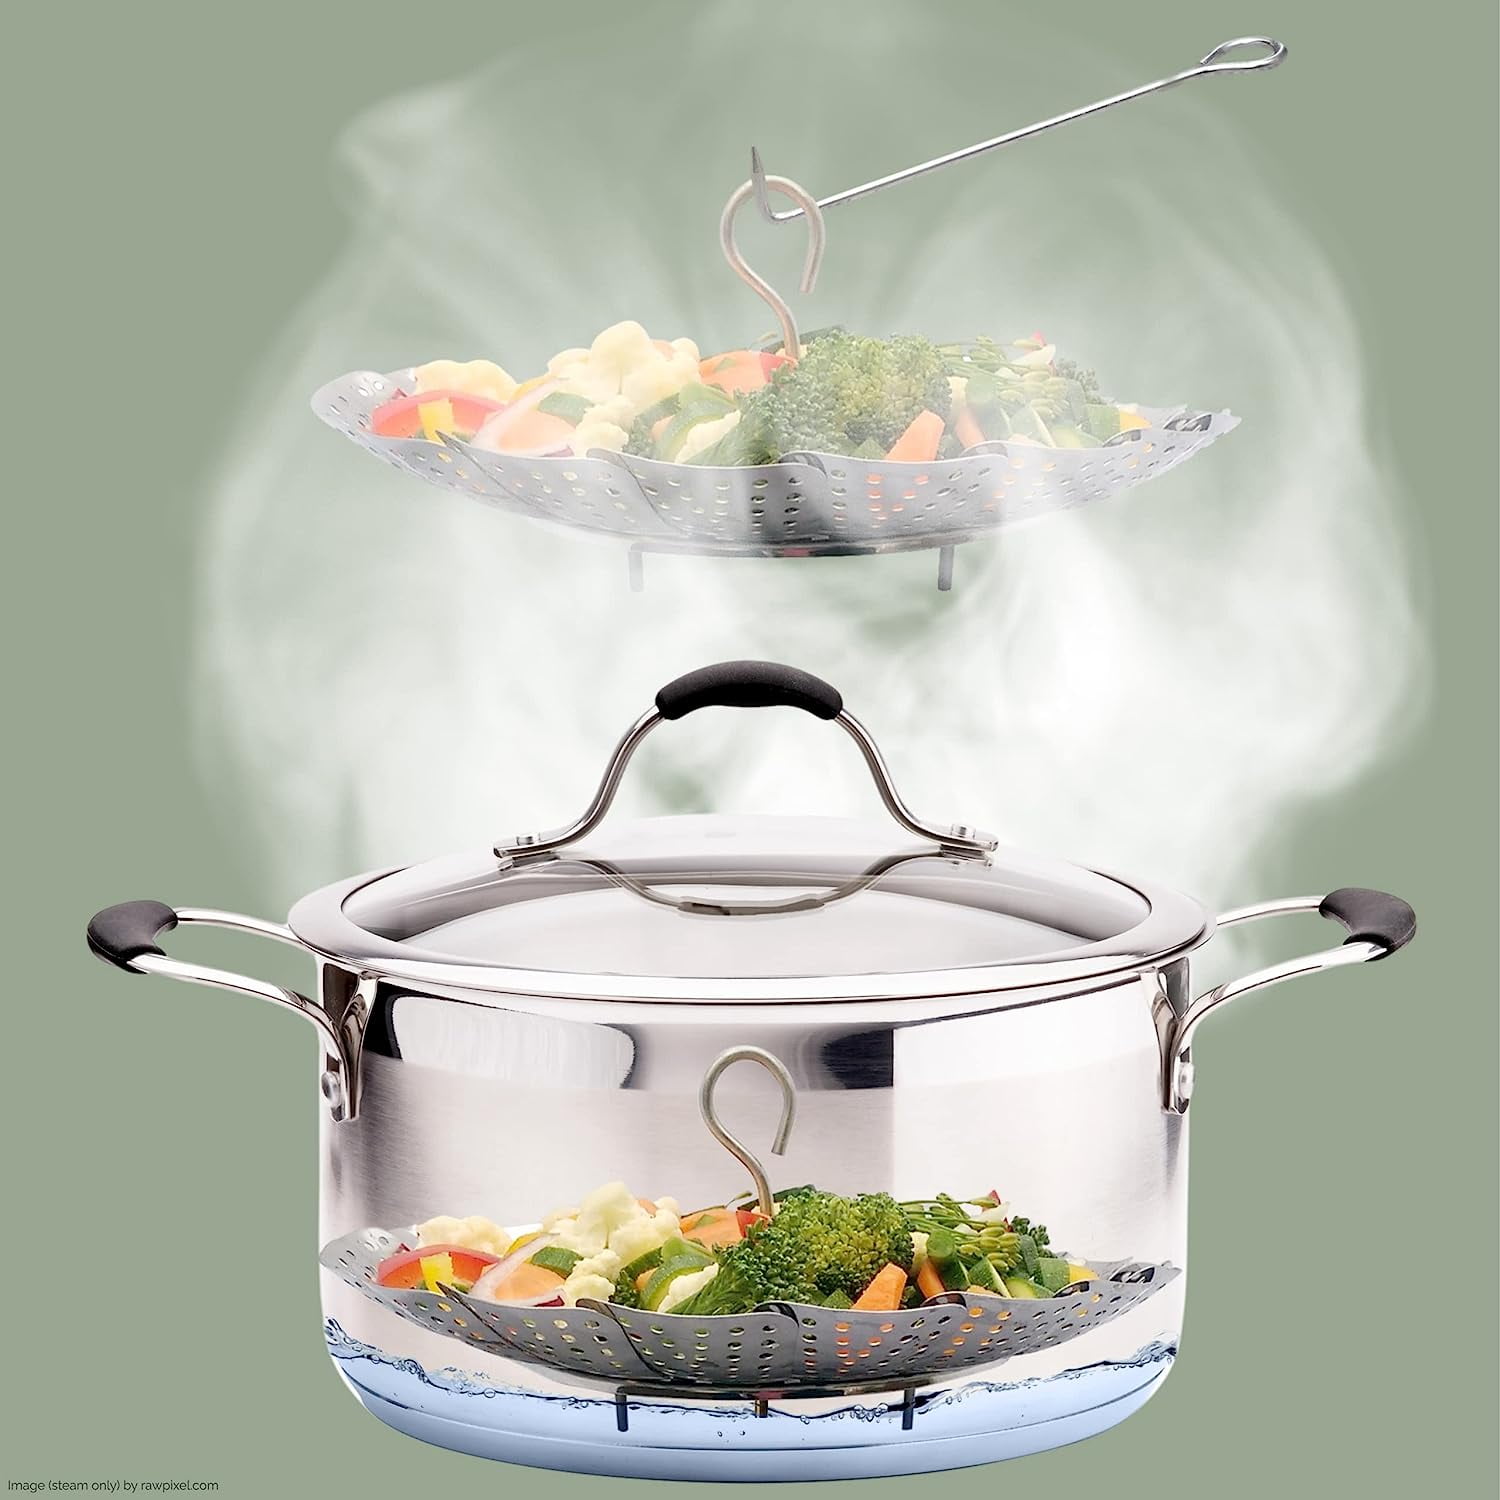 Instant Pot® Silicone Steamer Basket - Green, 1 ct - Kroger